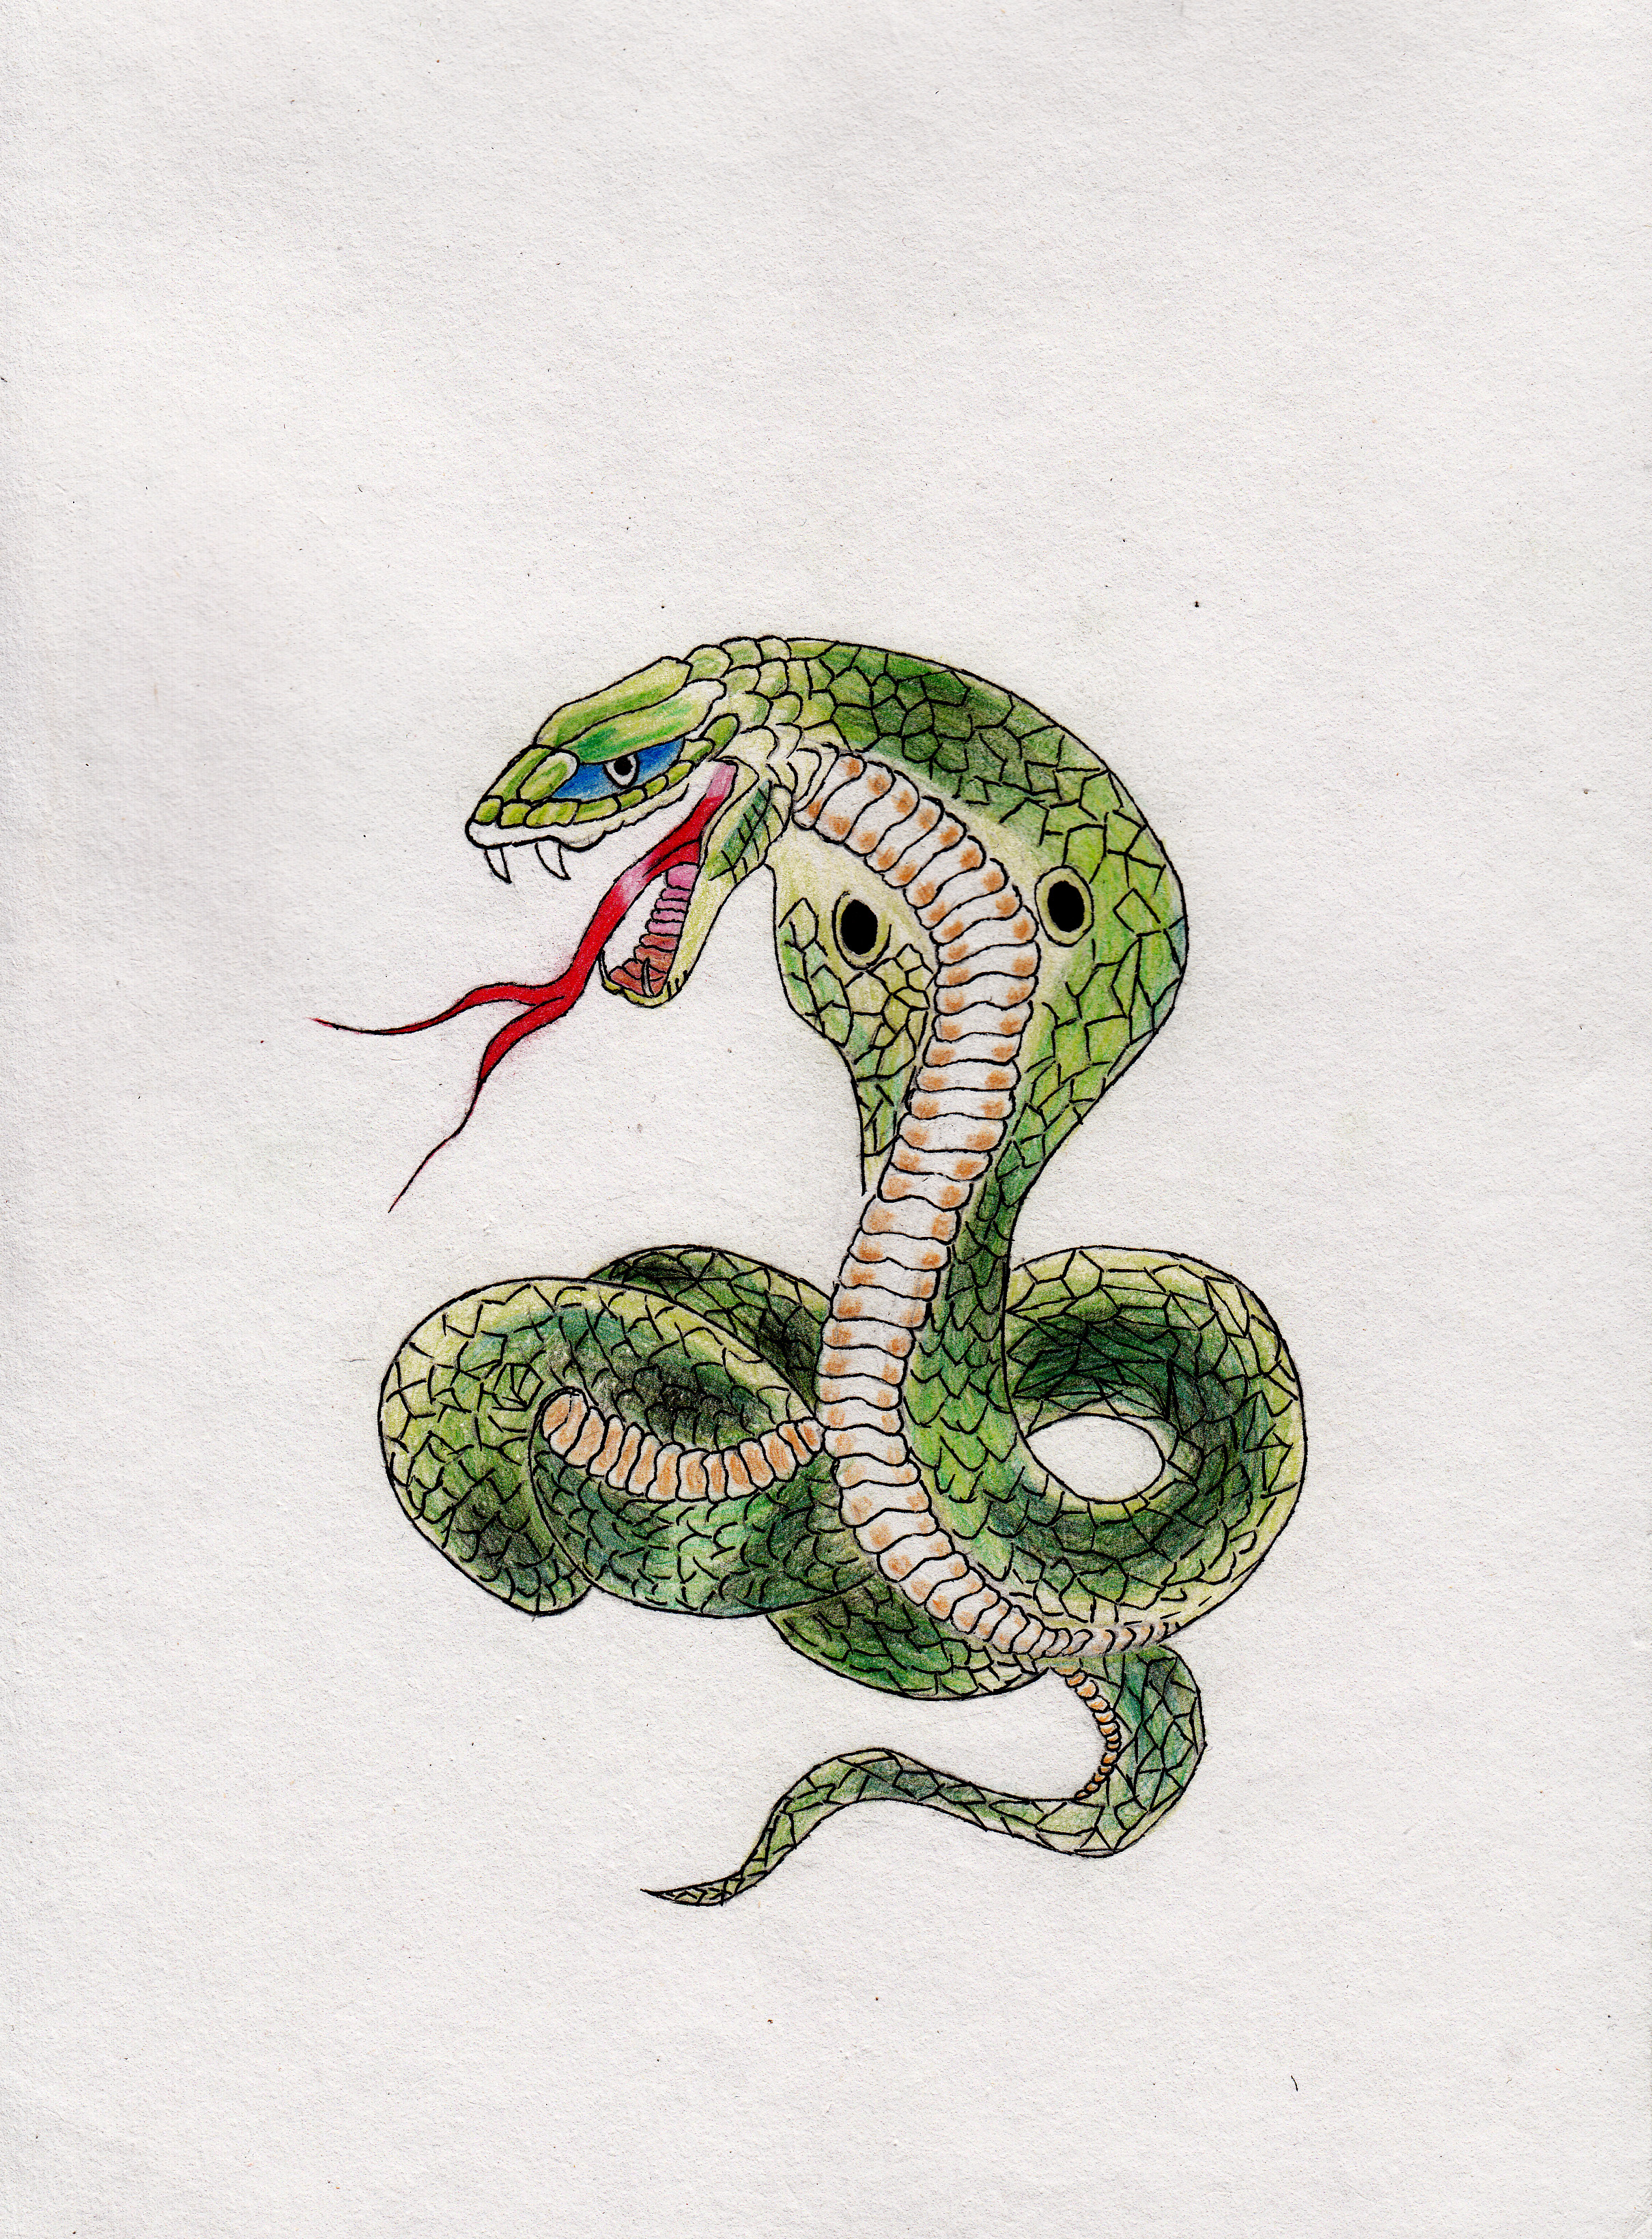 第一眼看到这条蛇就感到霸道,霸气,特别喜欢,自己就用彩铅画